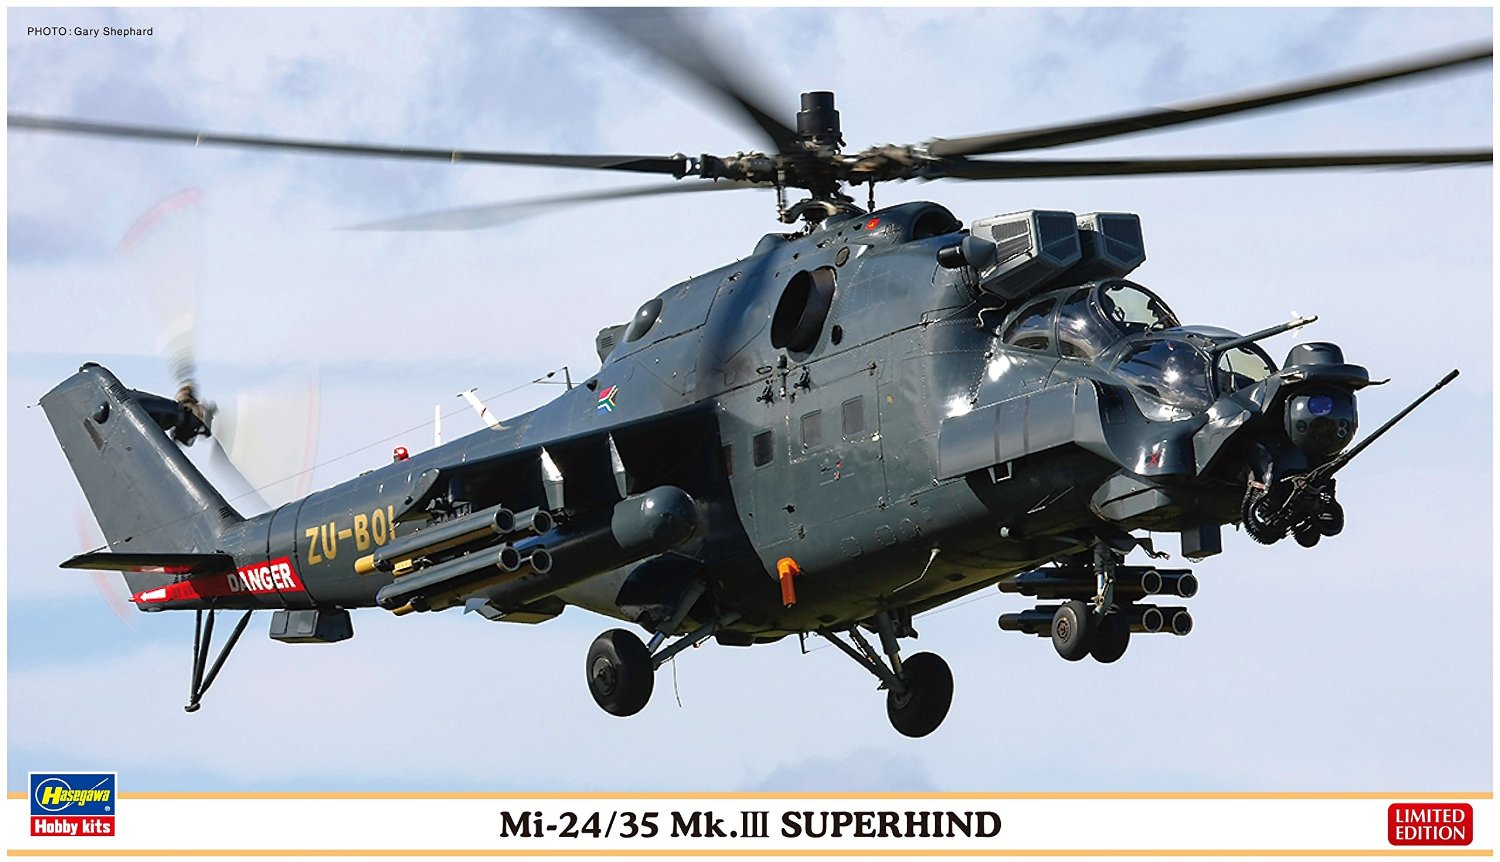 Mi-24/35 Mk.III Super Hind